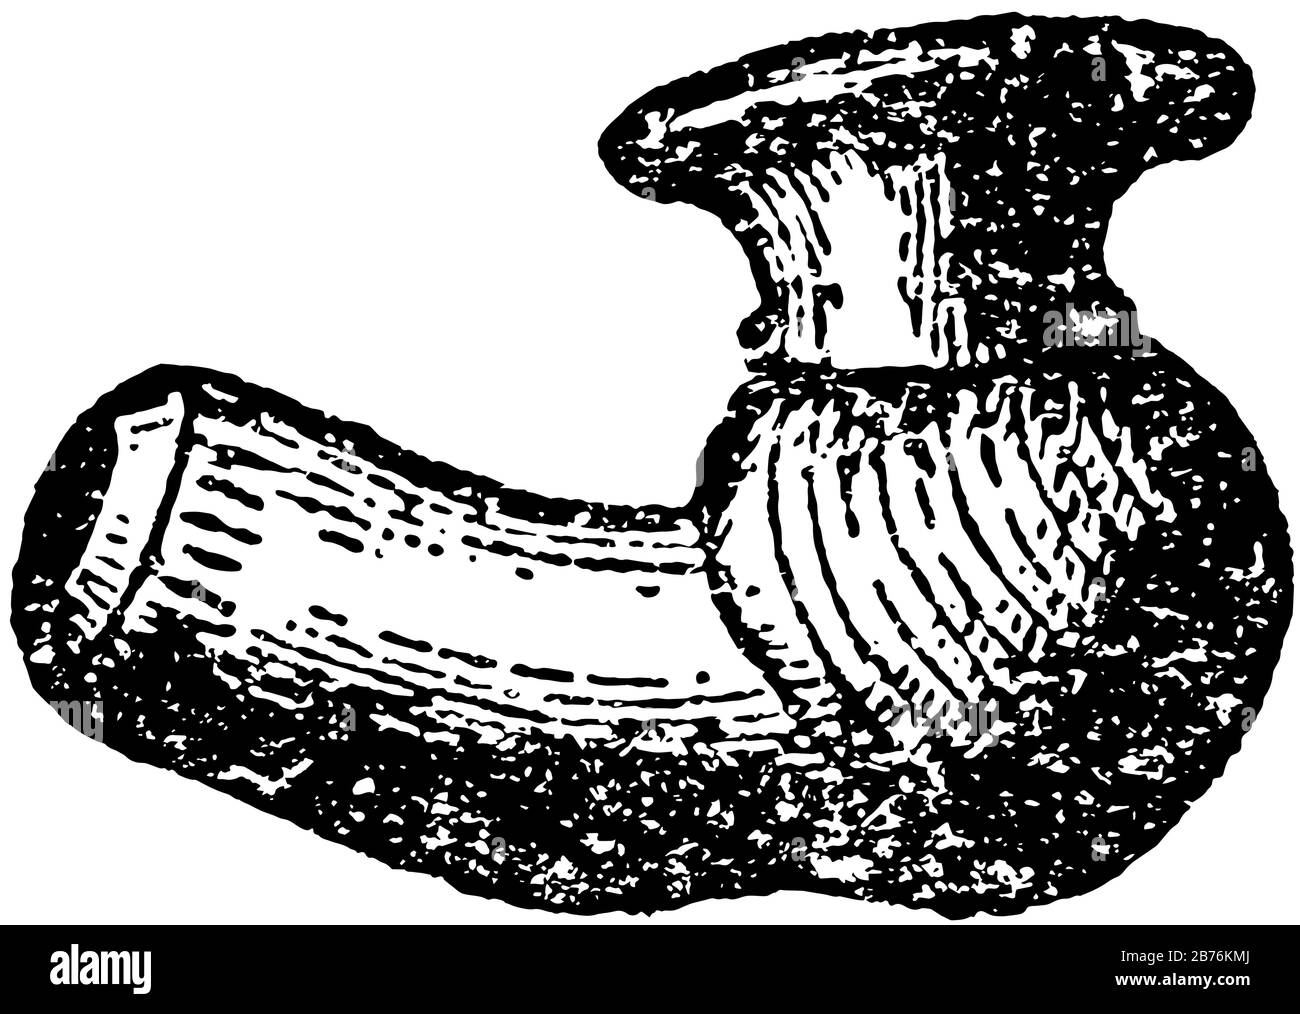 Clay Pipe Bowl sono tubi ritualistici, utilizzati nelle cerimonie e nella vita quotidiana, disegno di linee d'epoca o illustrazione di incisioni. Illustrazione Vettoriale